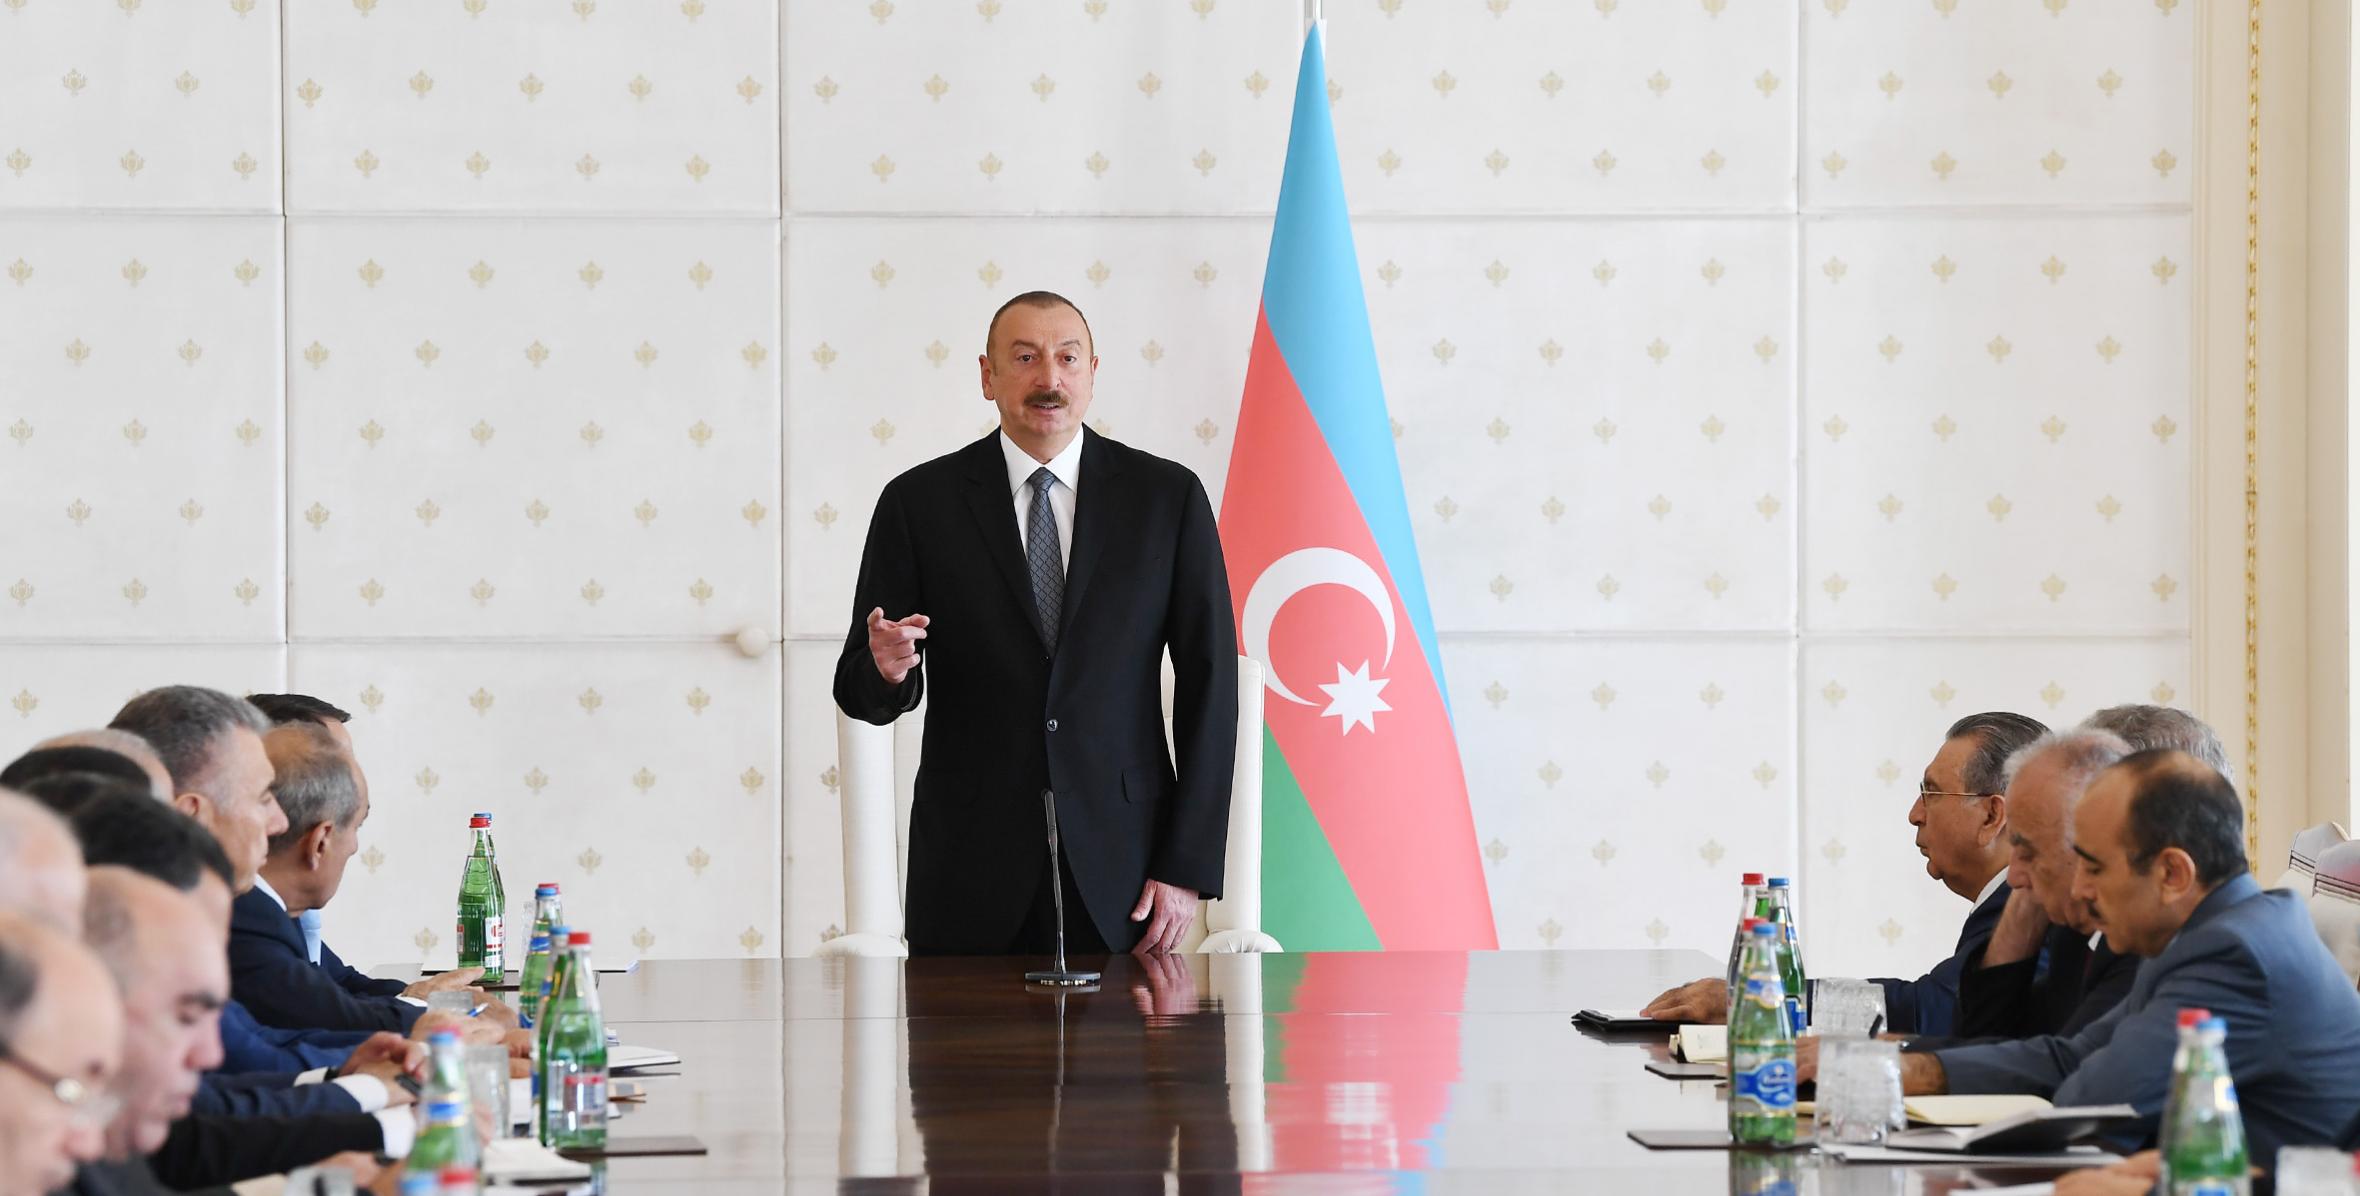 Вступительная речь Ильхама Алиева на заседание Кабинета Министров, посвященное итогам социально-экономического развития в первой половине 2018 года и предстоящим задачам